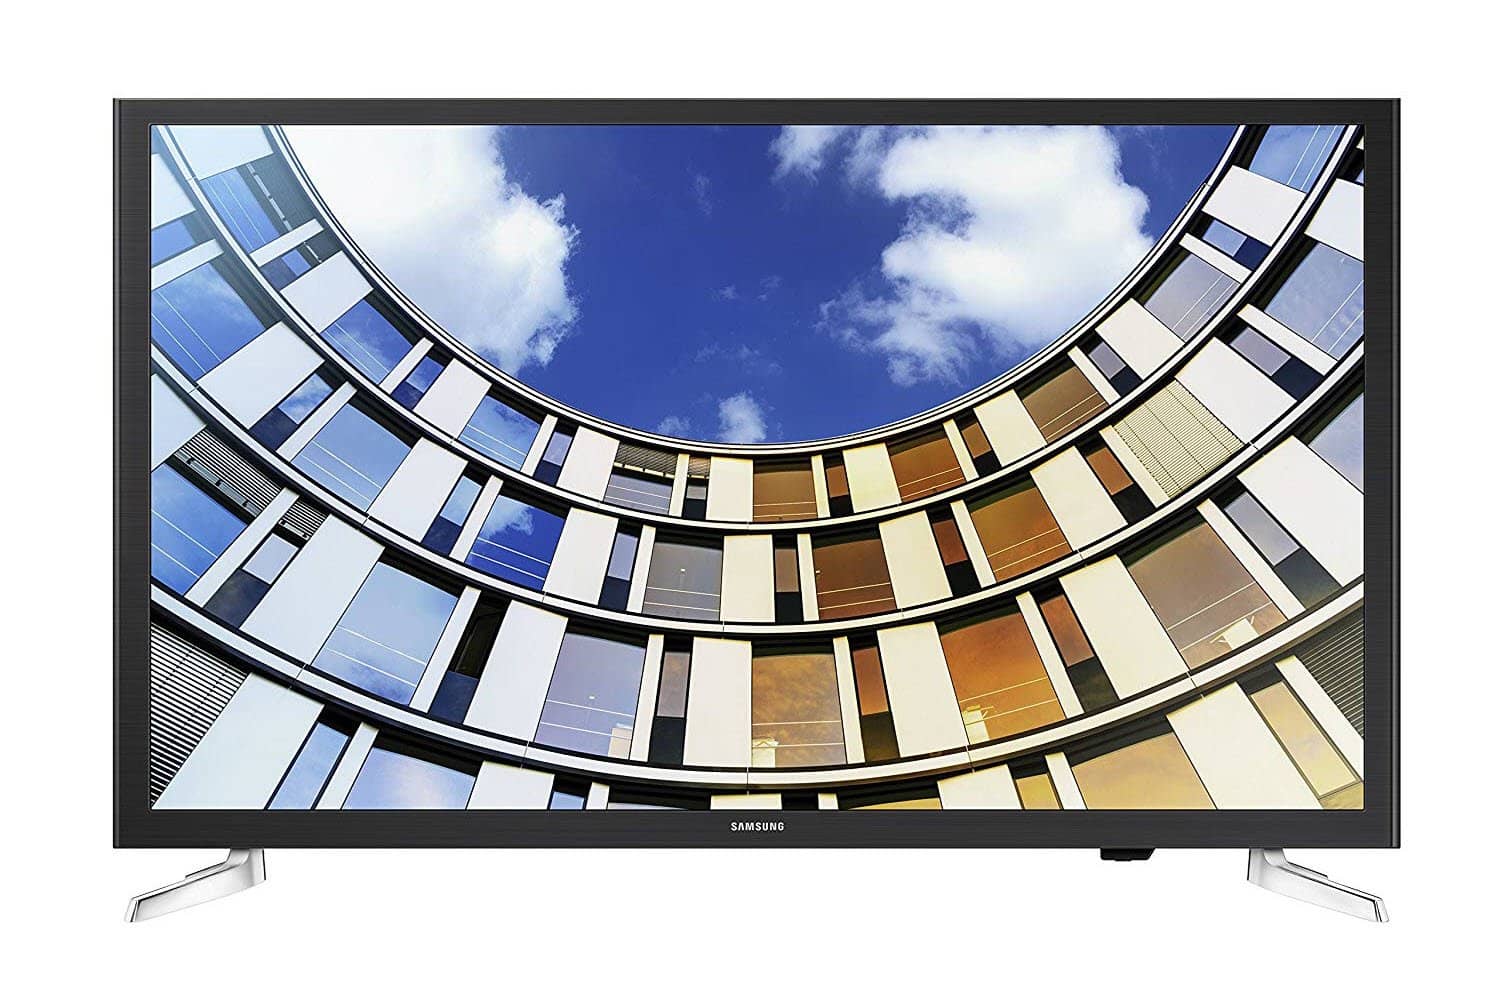 Samsung Electronics UN50M5300A 50-Inch 1080p Smart LED TV